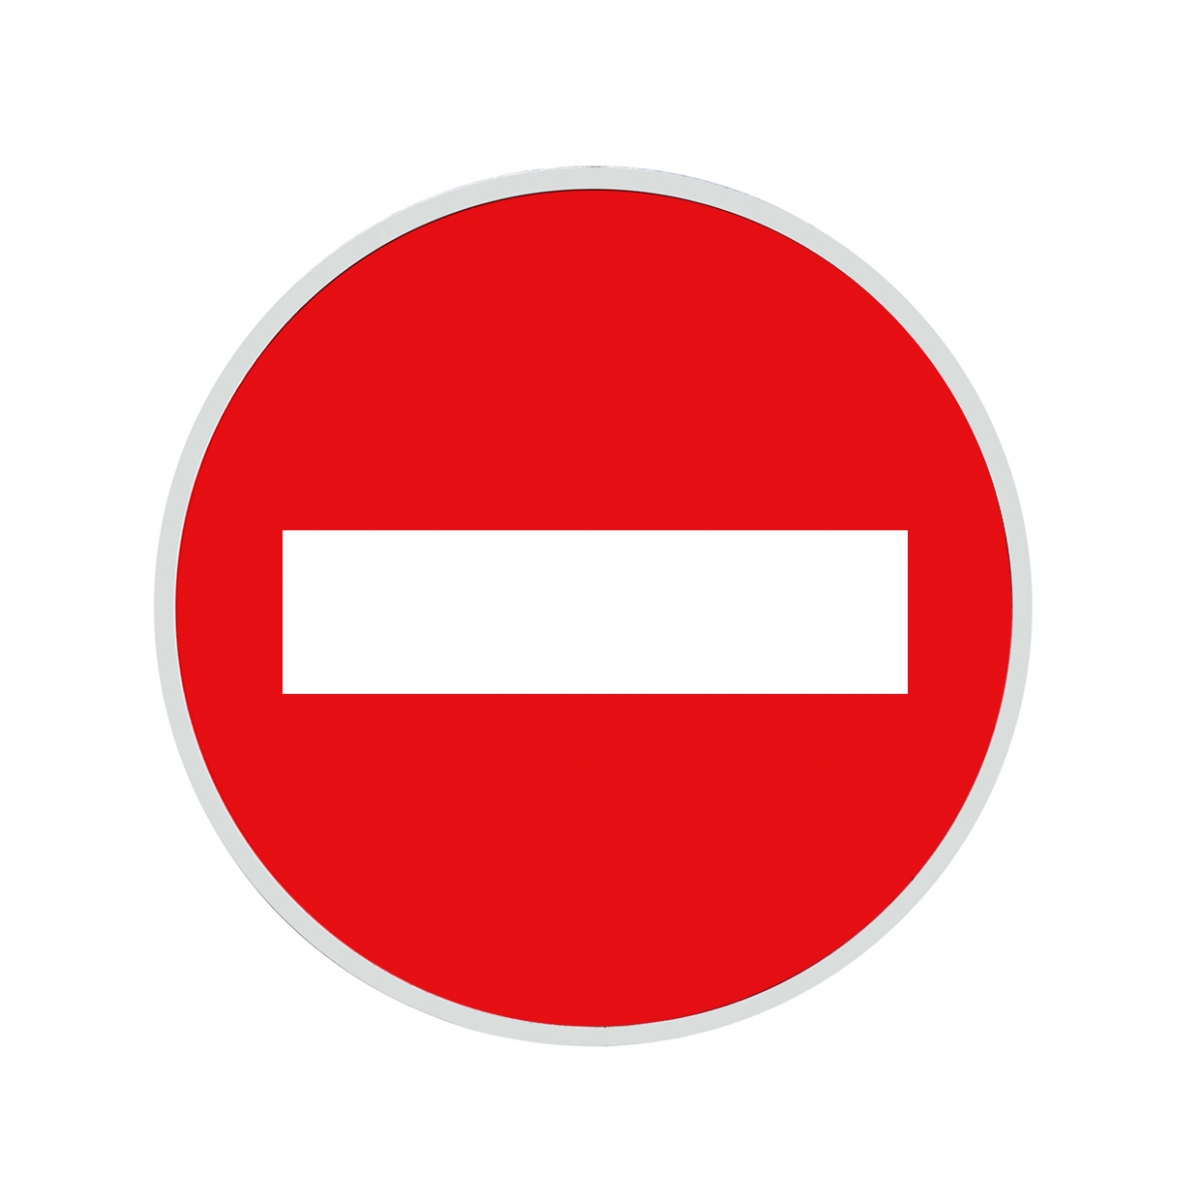 Imagen en la que se ve una señal de entrada prohibida